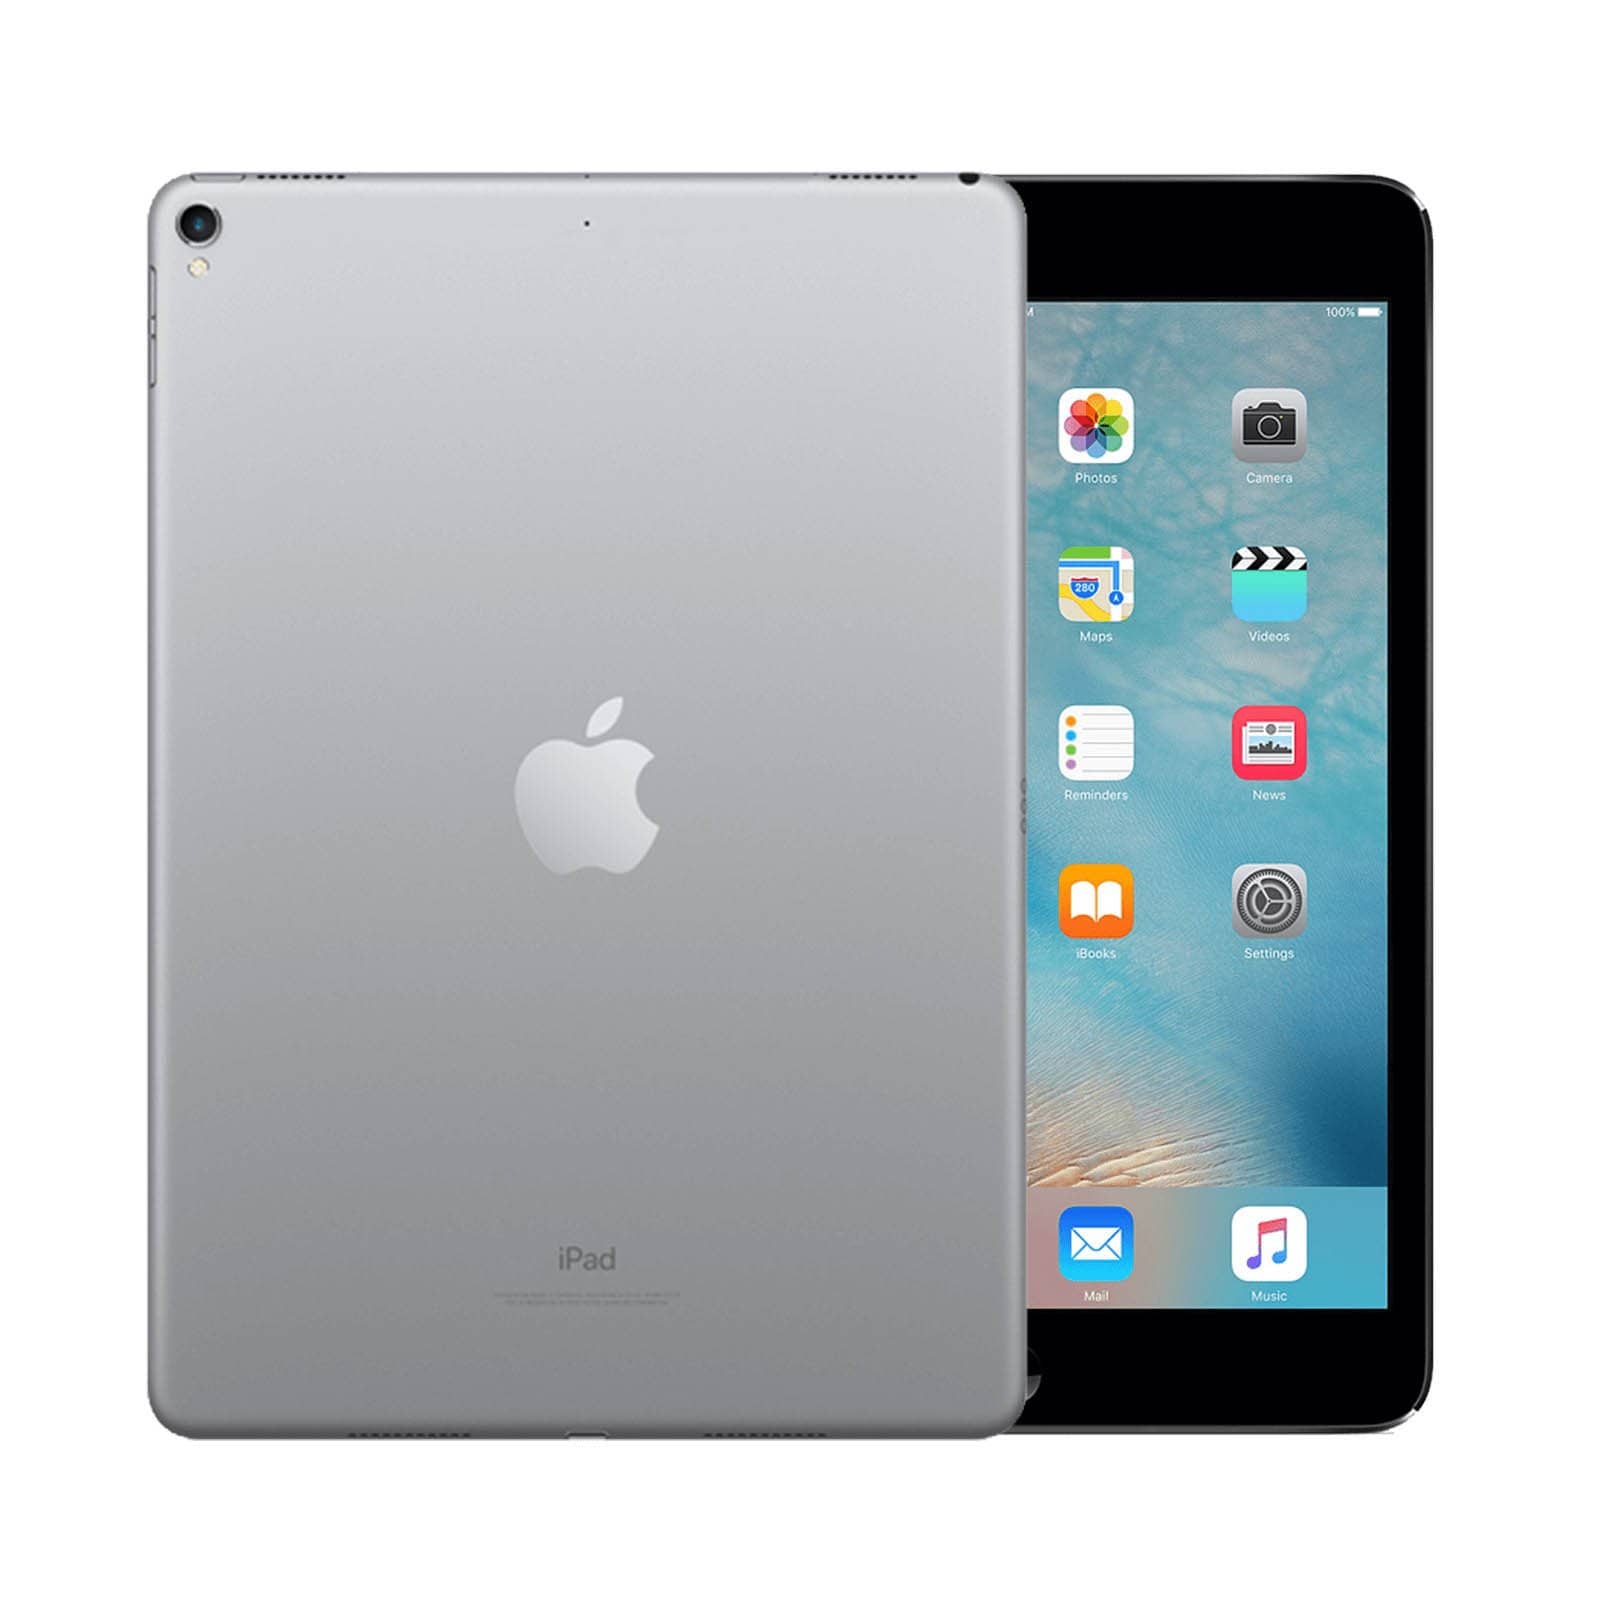 iPad Pro 9.7 Inch 128GB Space Grey Pristine - WiFi 128GB Space Grey Pristine